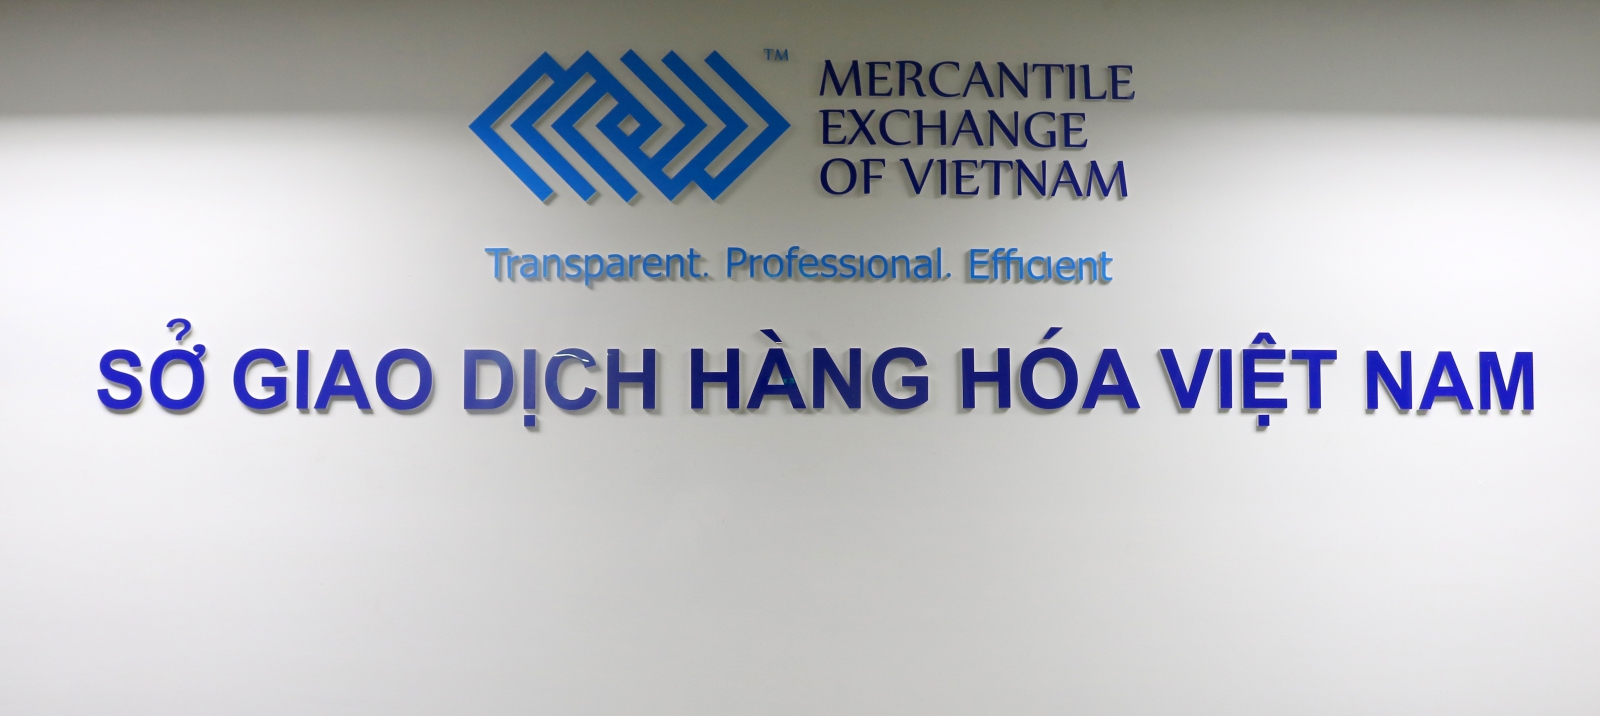 Công ty cổ phần Hitrade là Thành viên Kinh doanh mới của Sở Giao dịch Hàng hóa Việt Nam